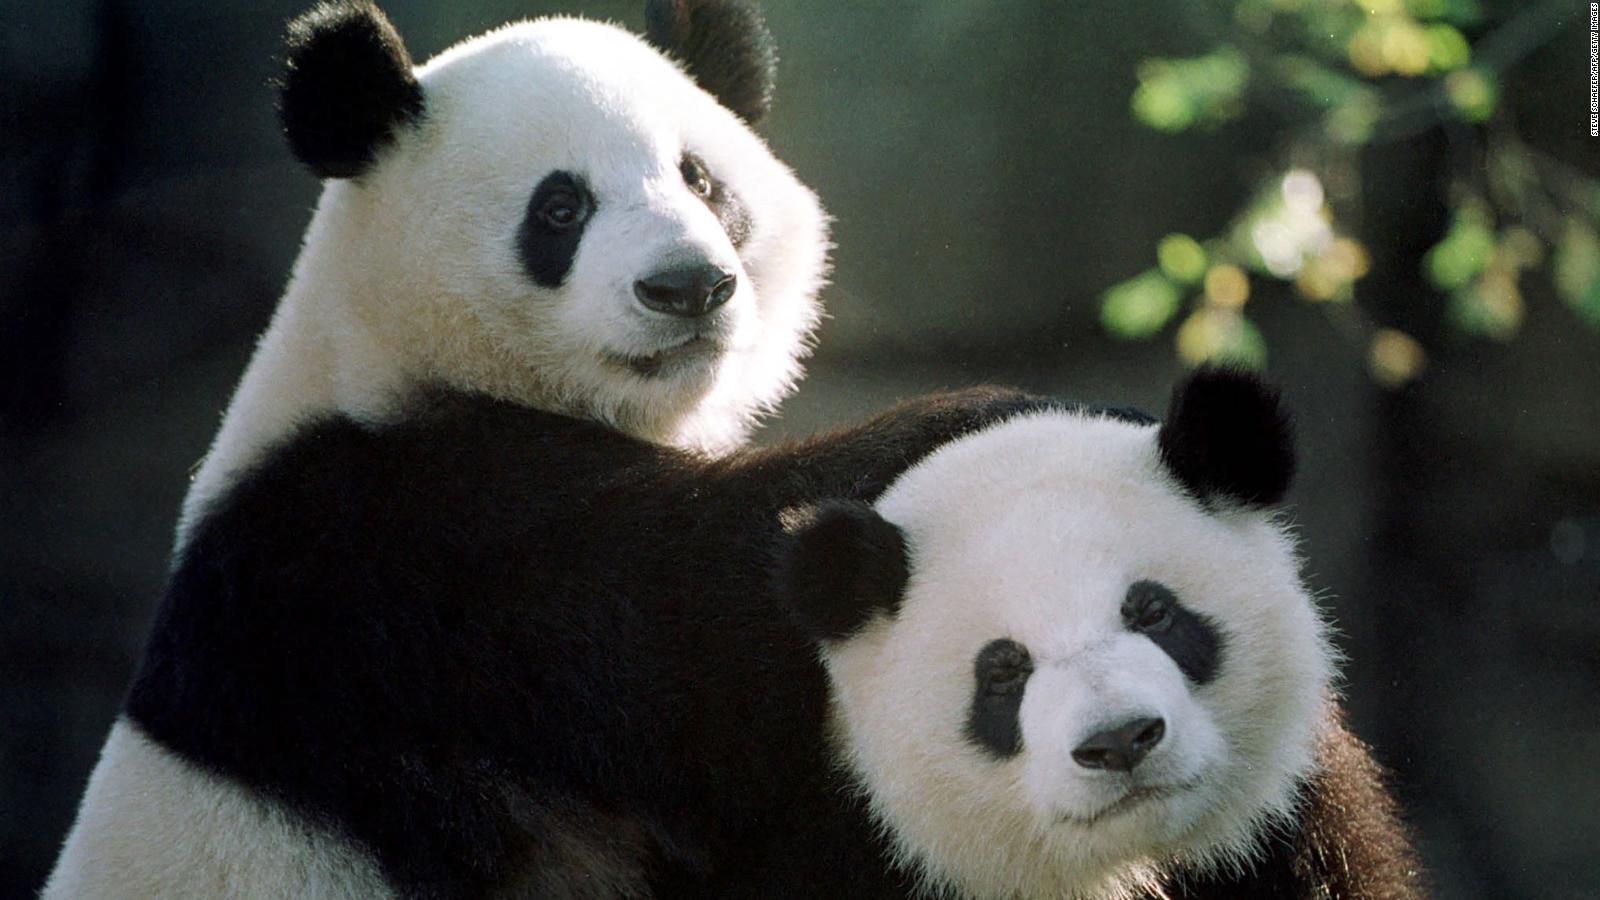 China confirma que enviará dos pandas al Zoológico de San Diego en
EE.UU.